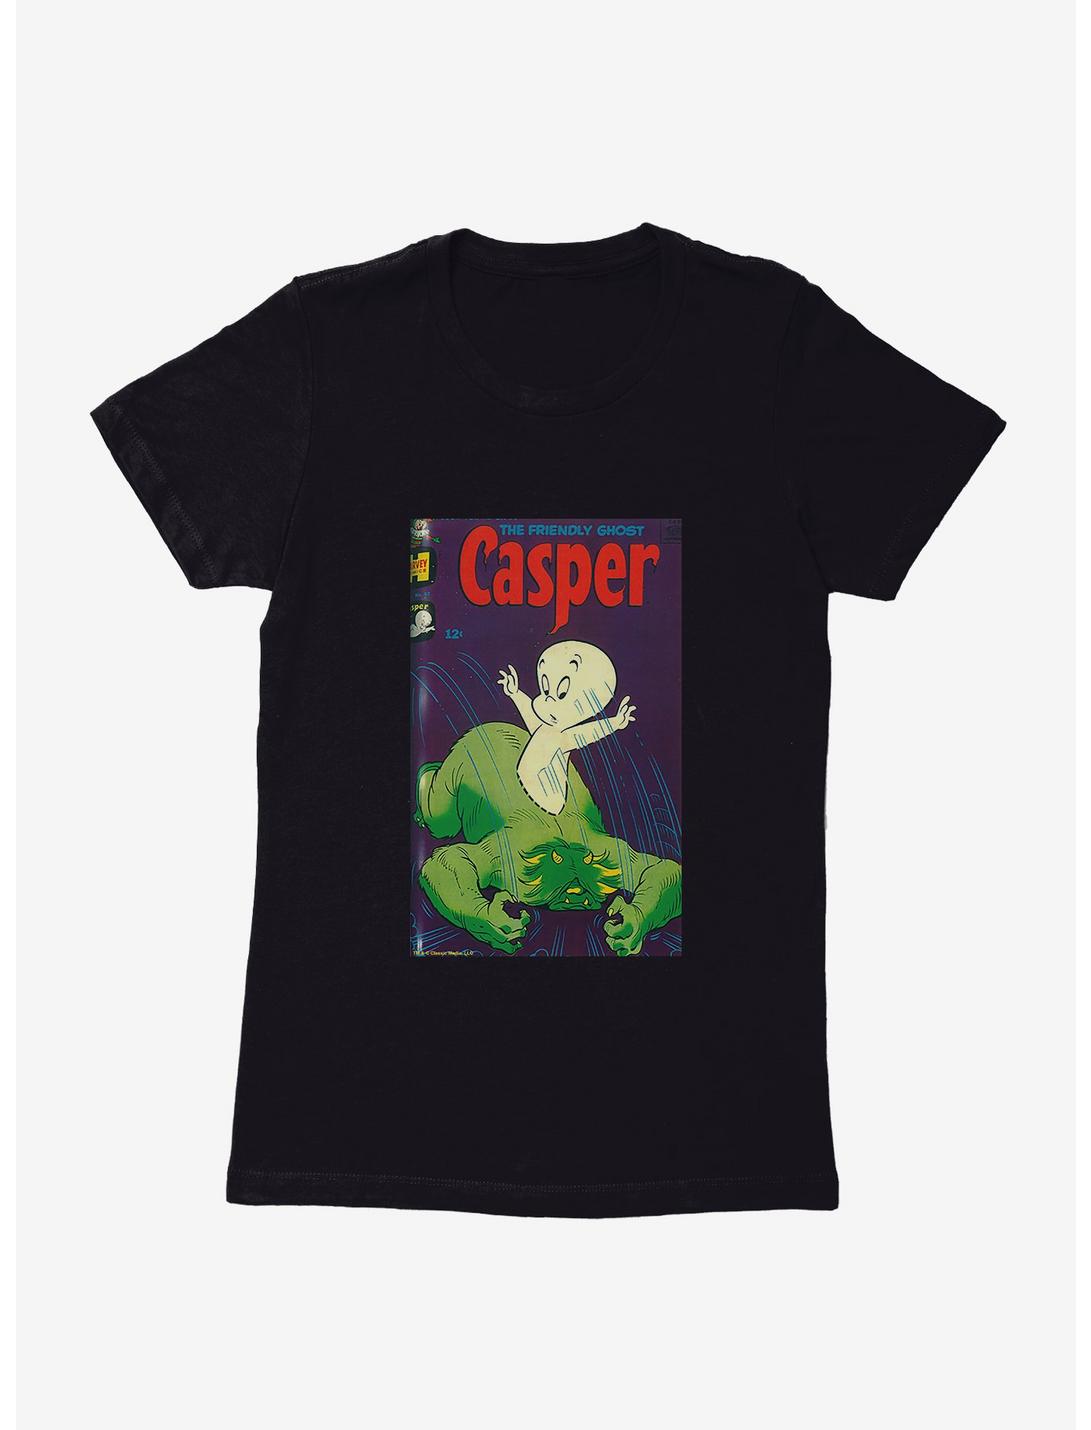 Casper The Friendly Ghost See Through Womens T-Shirt, BLACK, hi-res